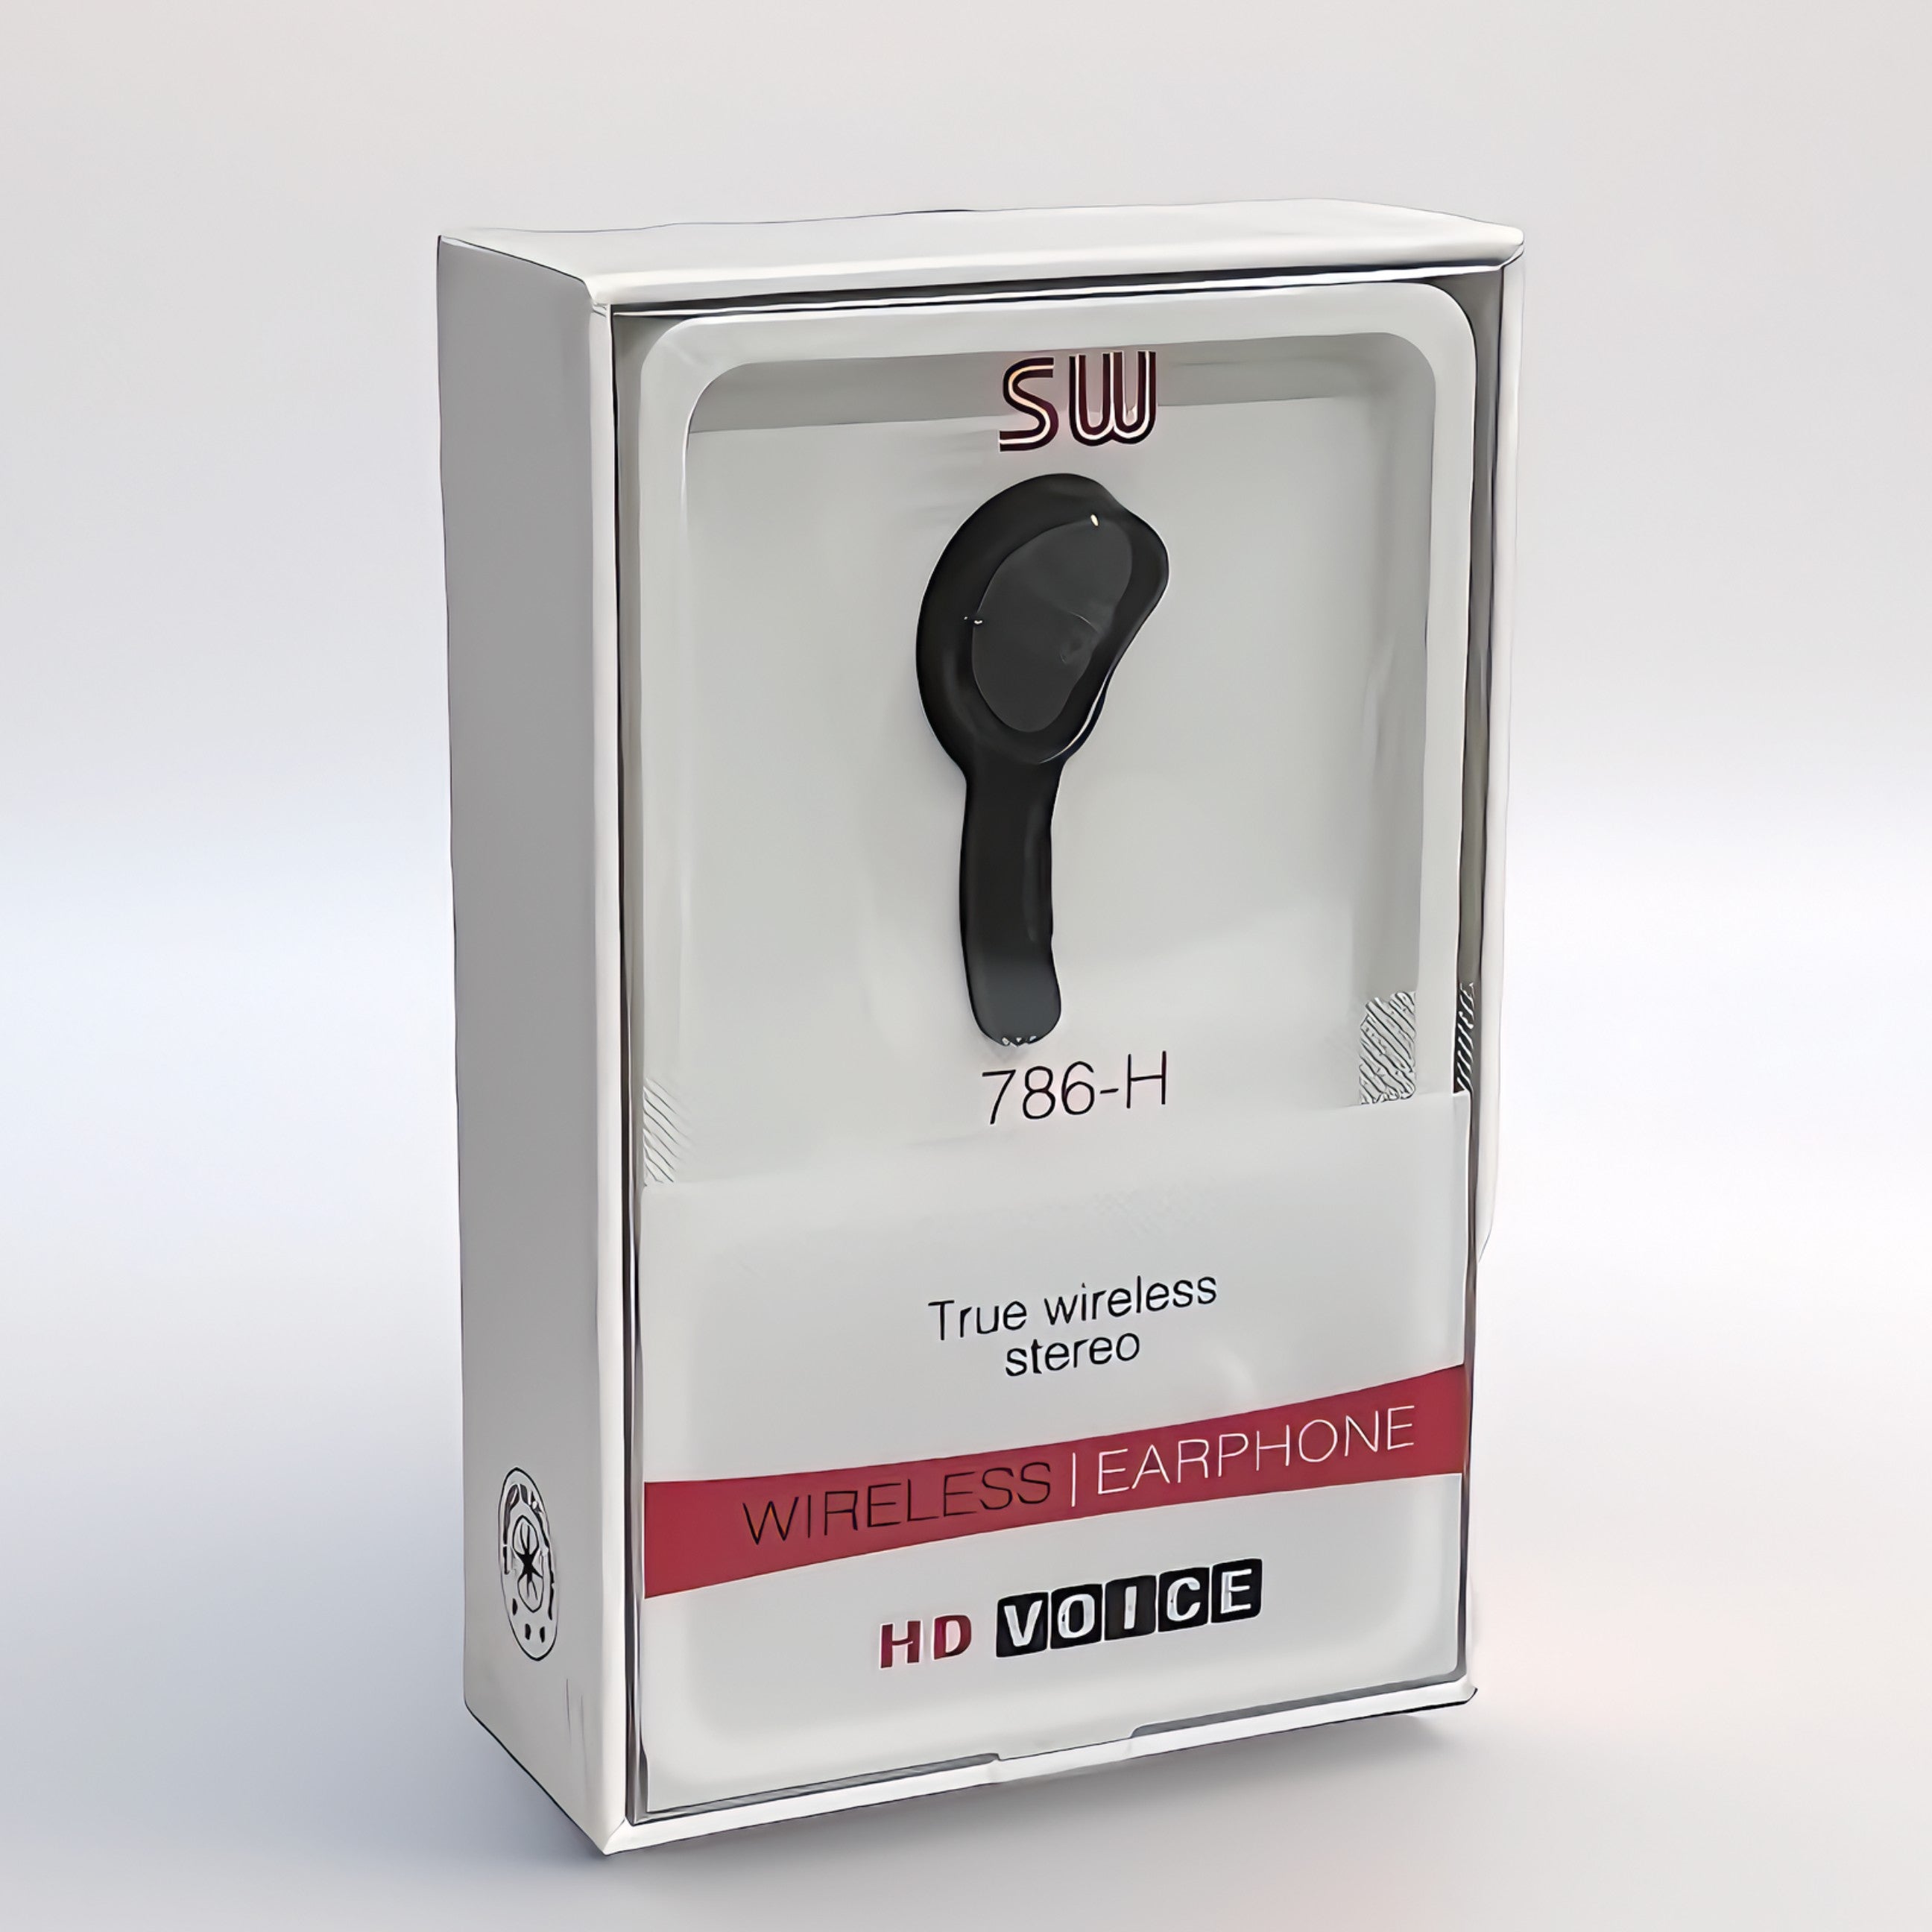 SW 786-H Wireless Earphone In Packaging